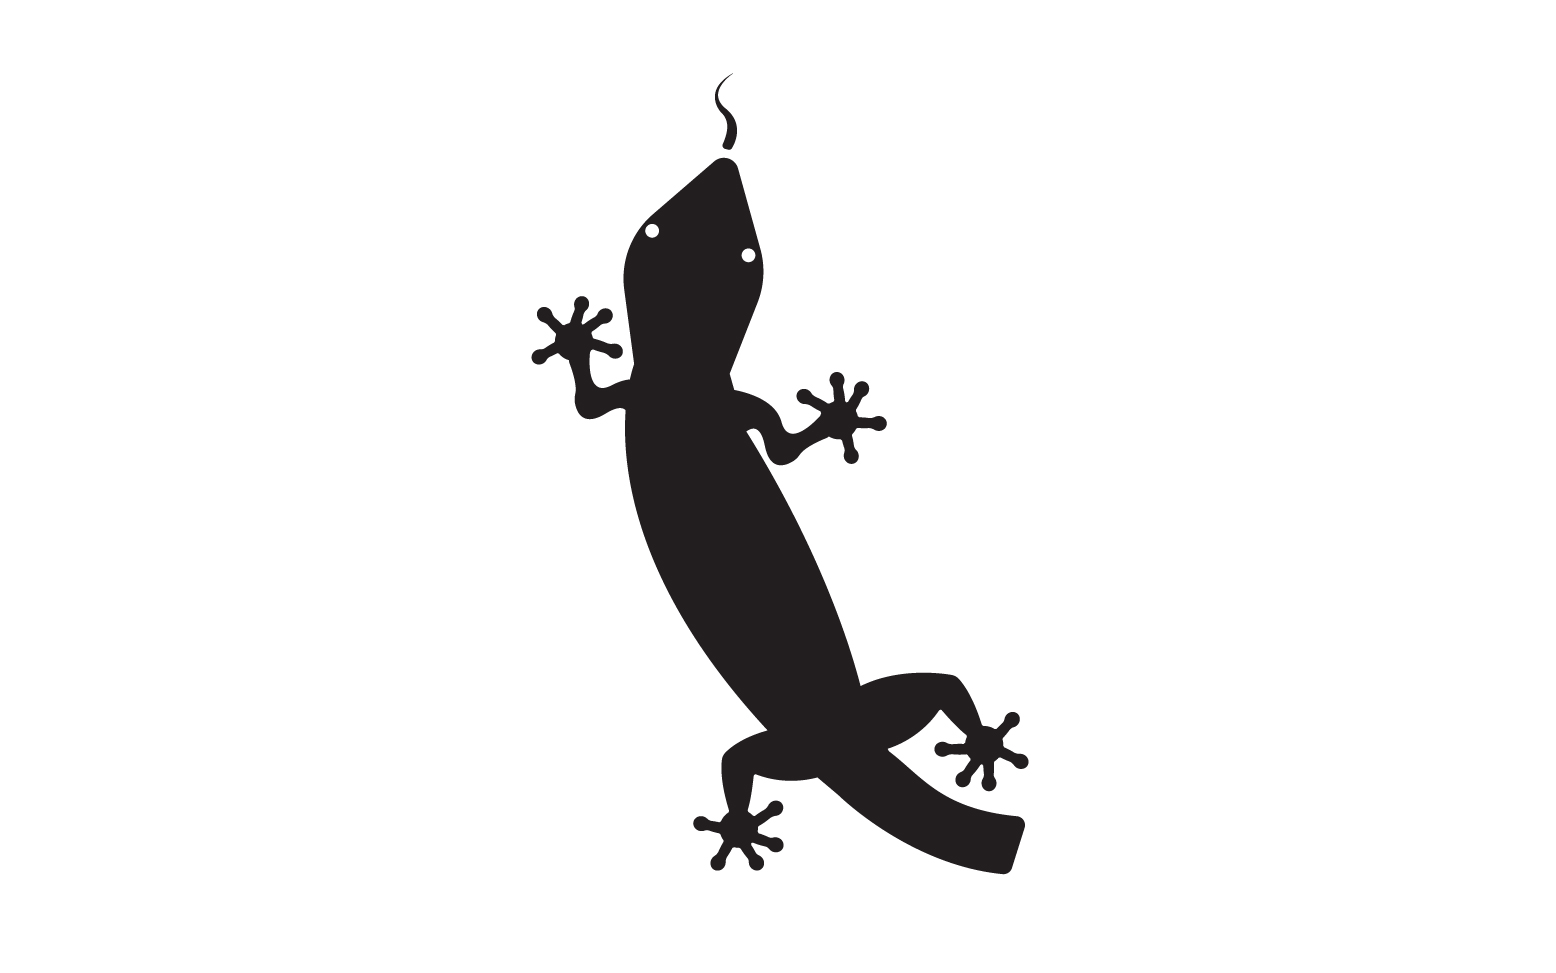 Lizard chameleon home lizard logo v14